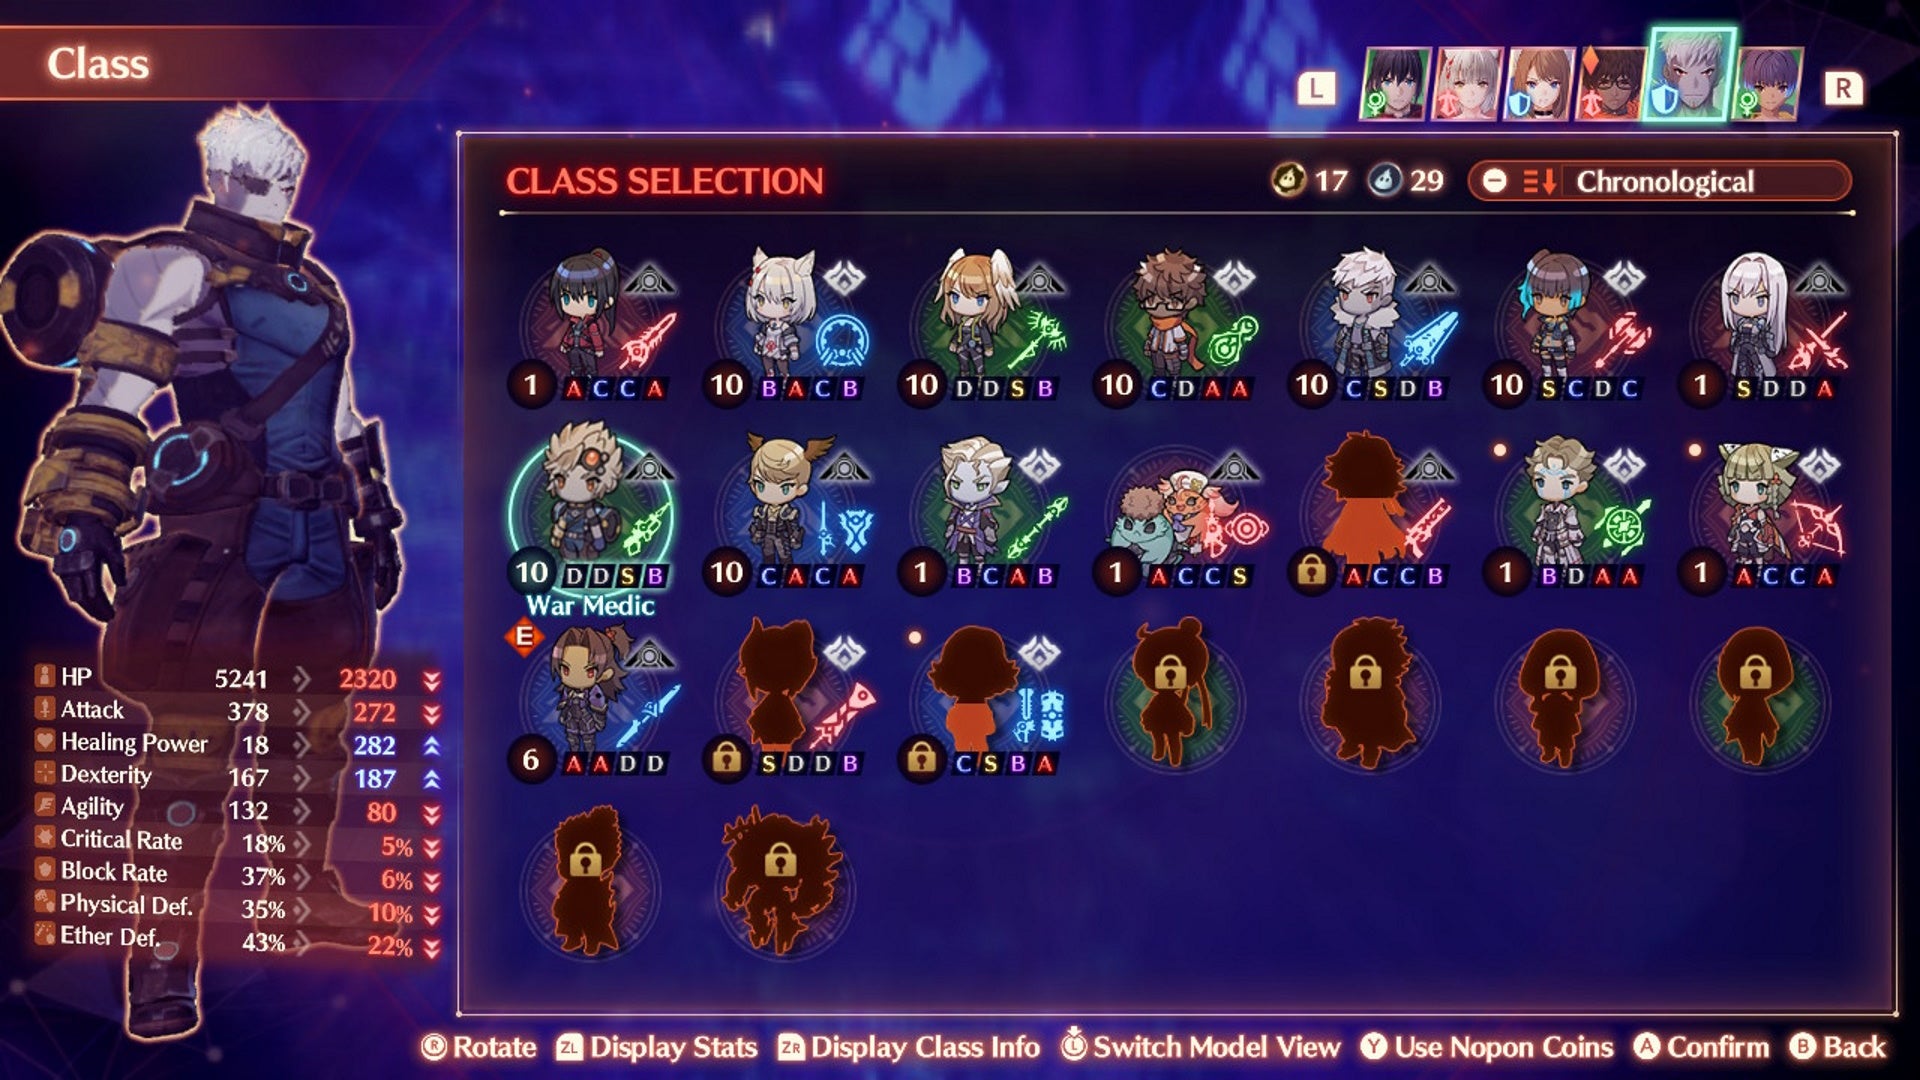 Xenoblade 3 arts: The War Medic class selection screen